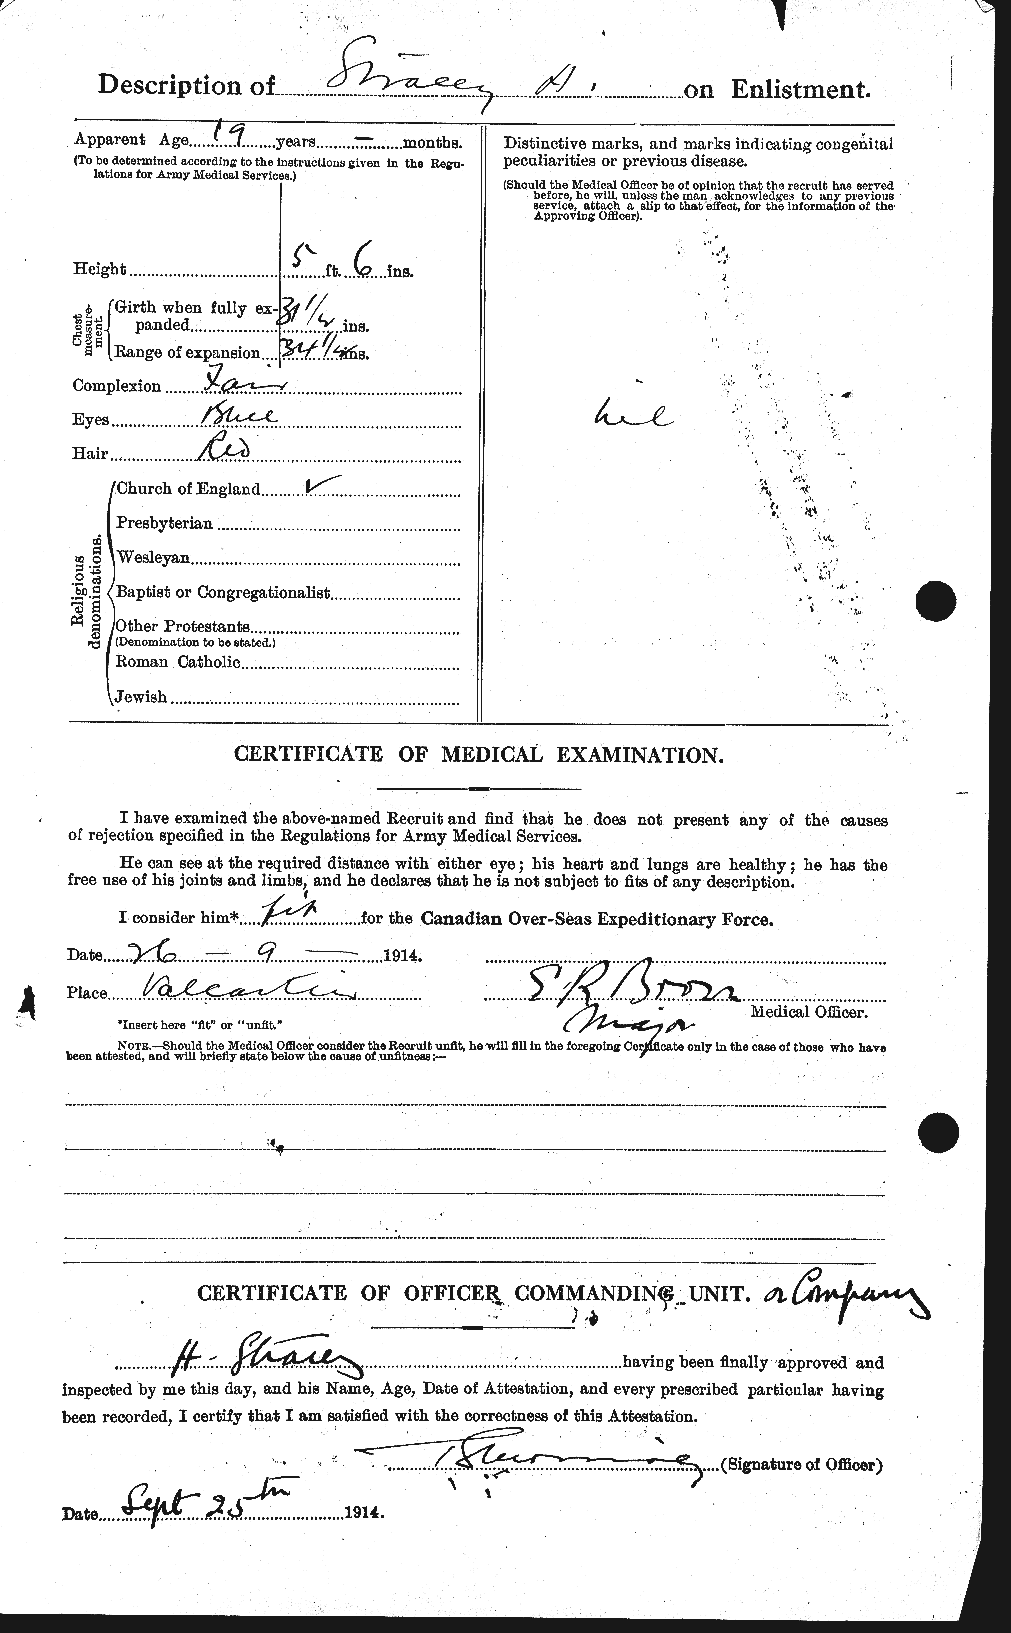 Dossiers du Personnel de la Première Guerre mondiale - CEC 122366b